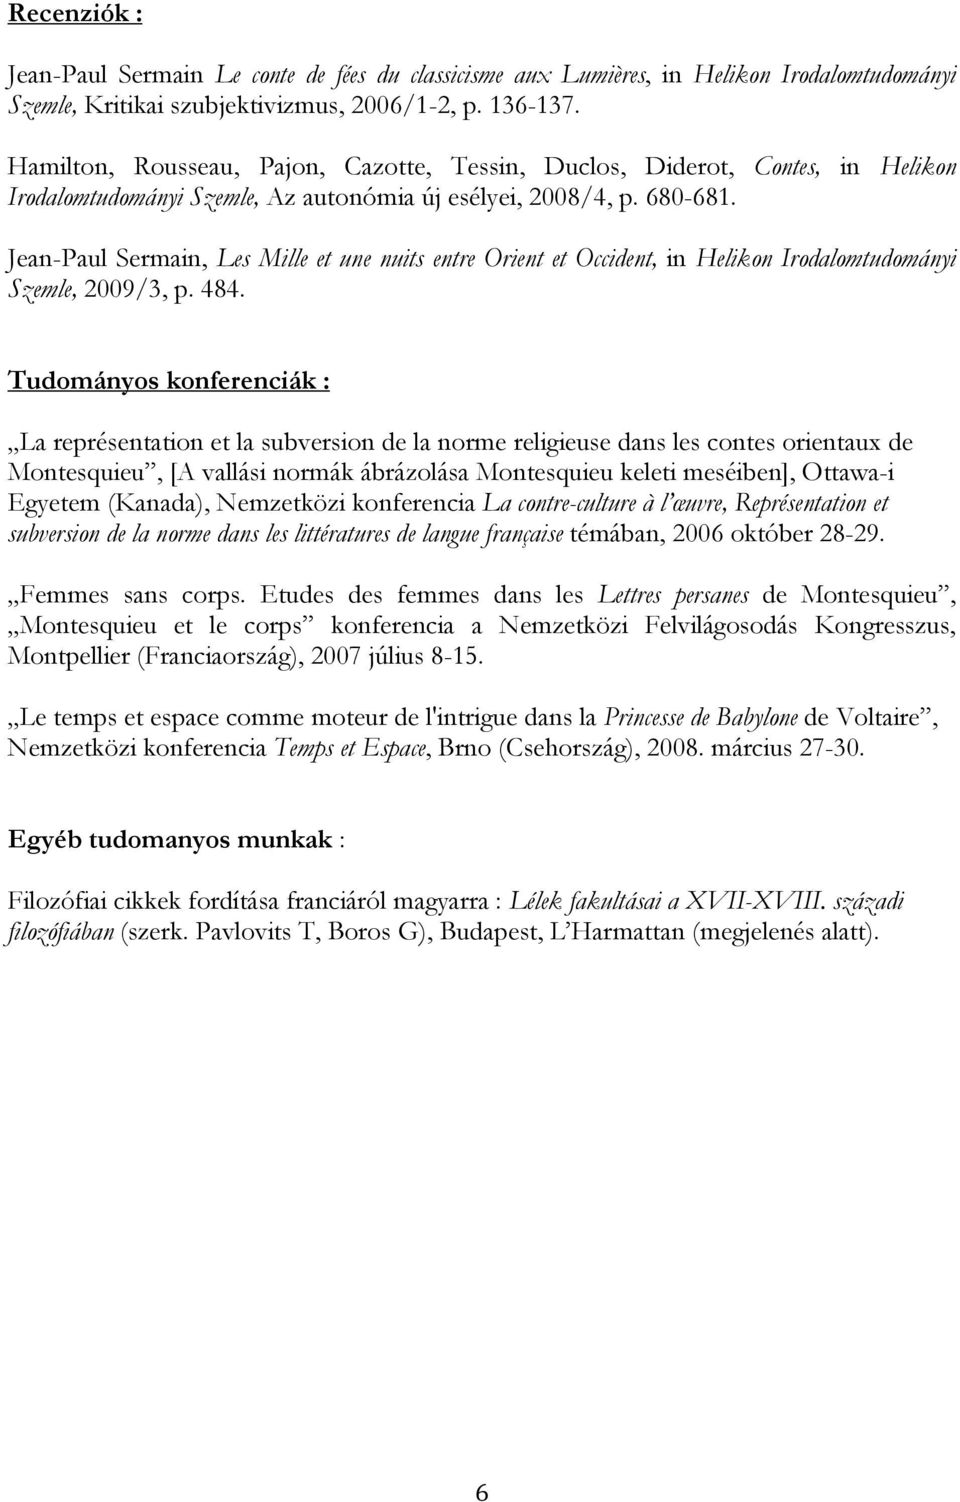 Jean-Paul Sermain, Les Mille et une nuits entre Orient et Occident, in Helikon Irodalomtudományi Szemle, 2009/3, p. 484.